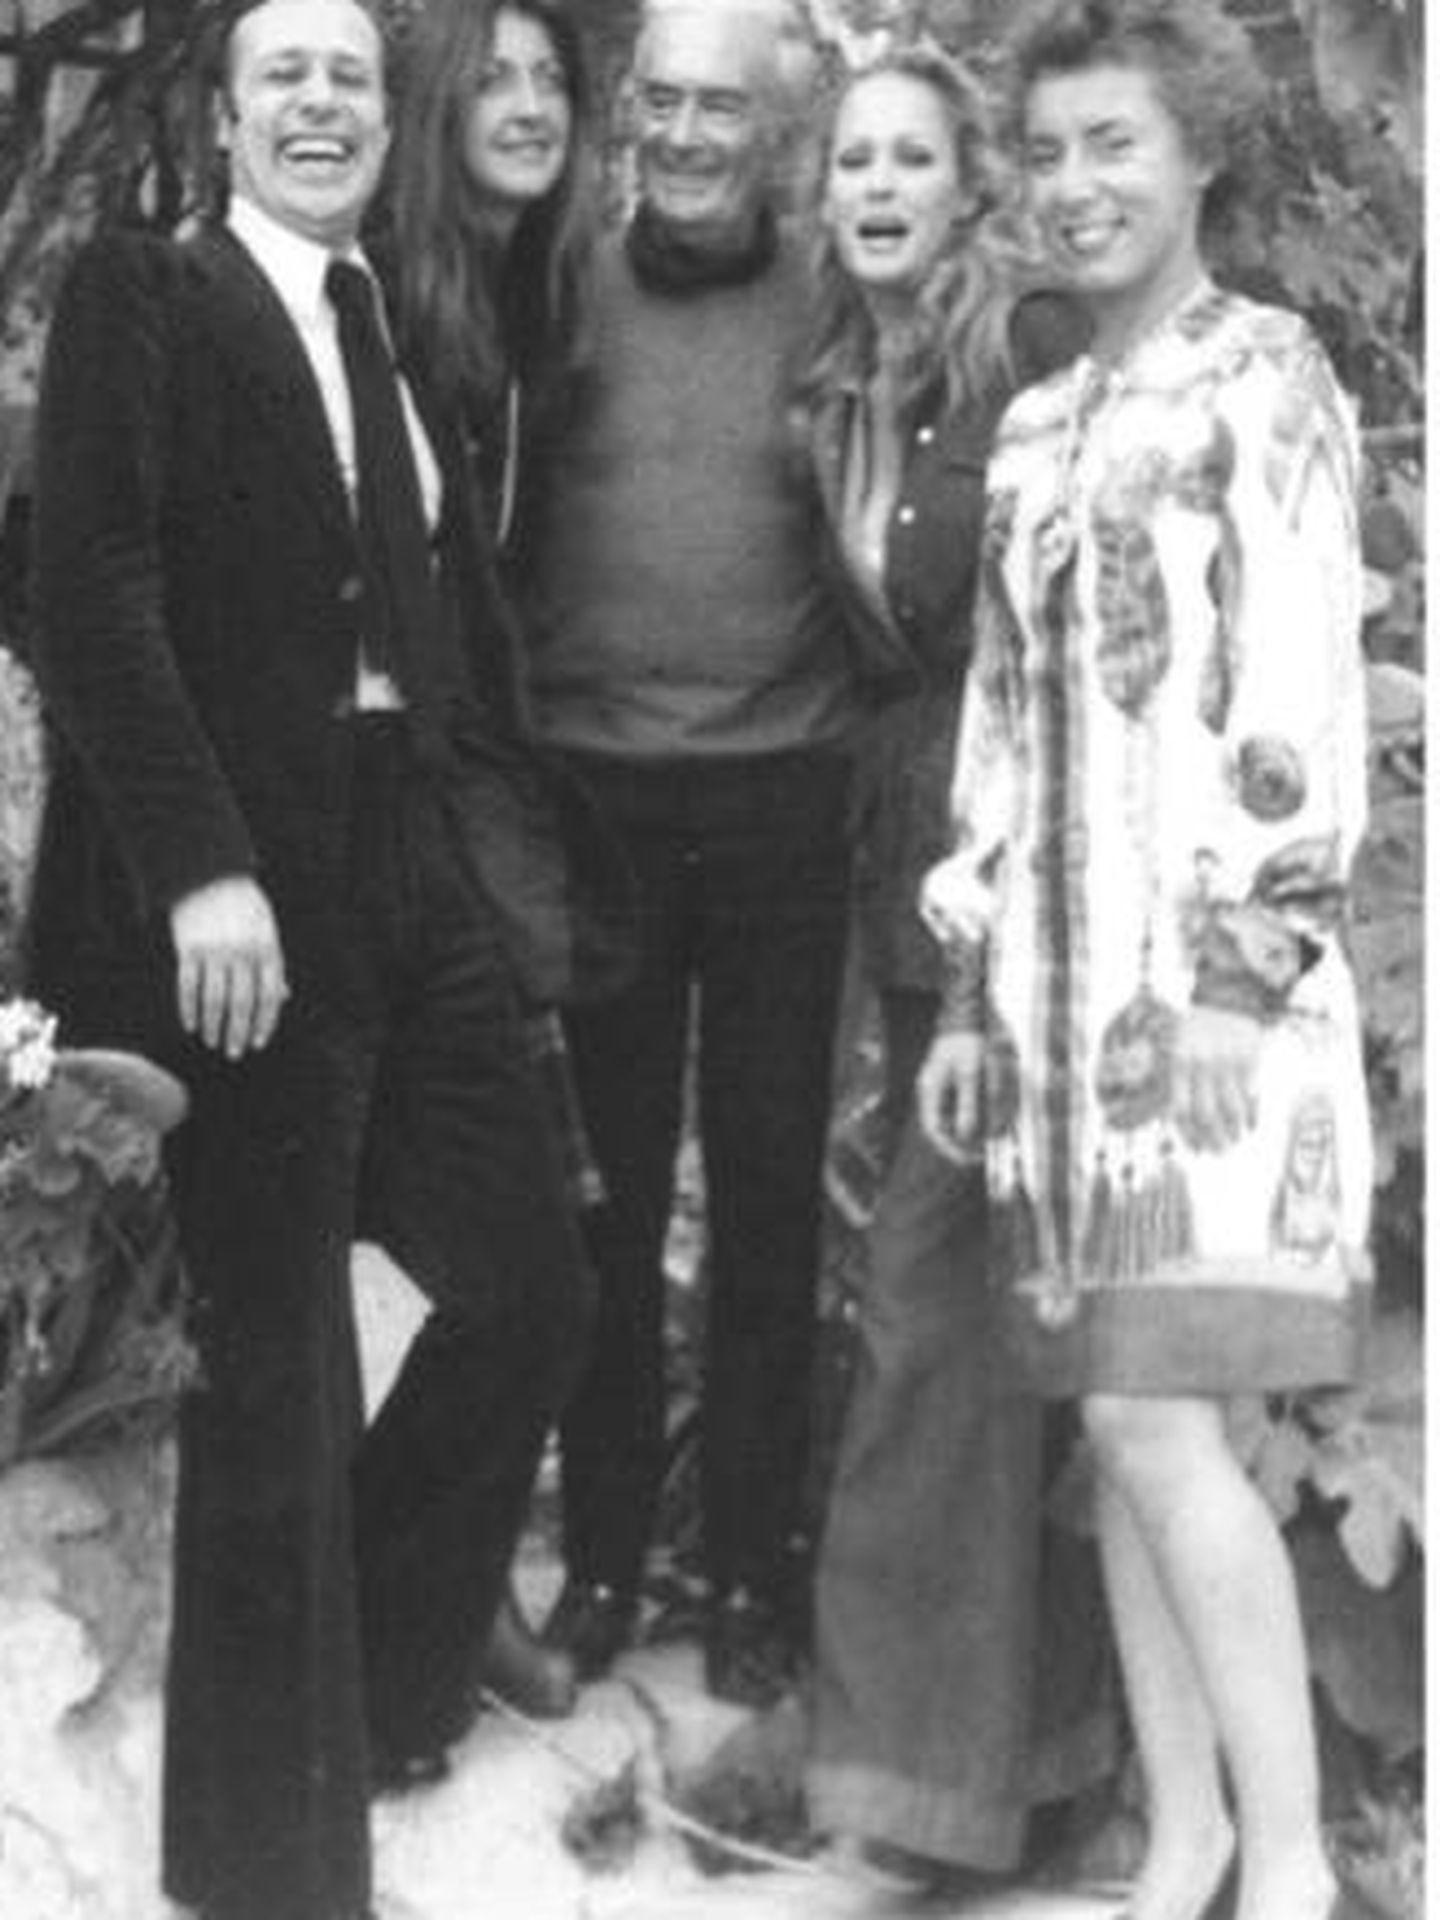 De Hory con Ursula Andress, amiga del impostor, en Ibiza, en 1974 (colección Beltrán Rahola).